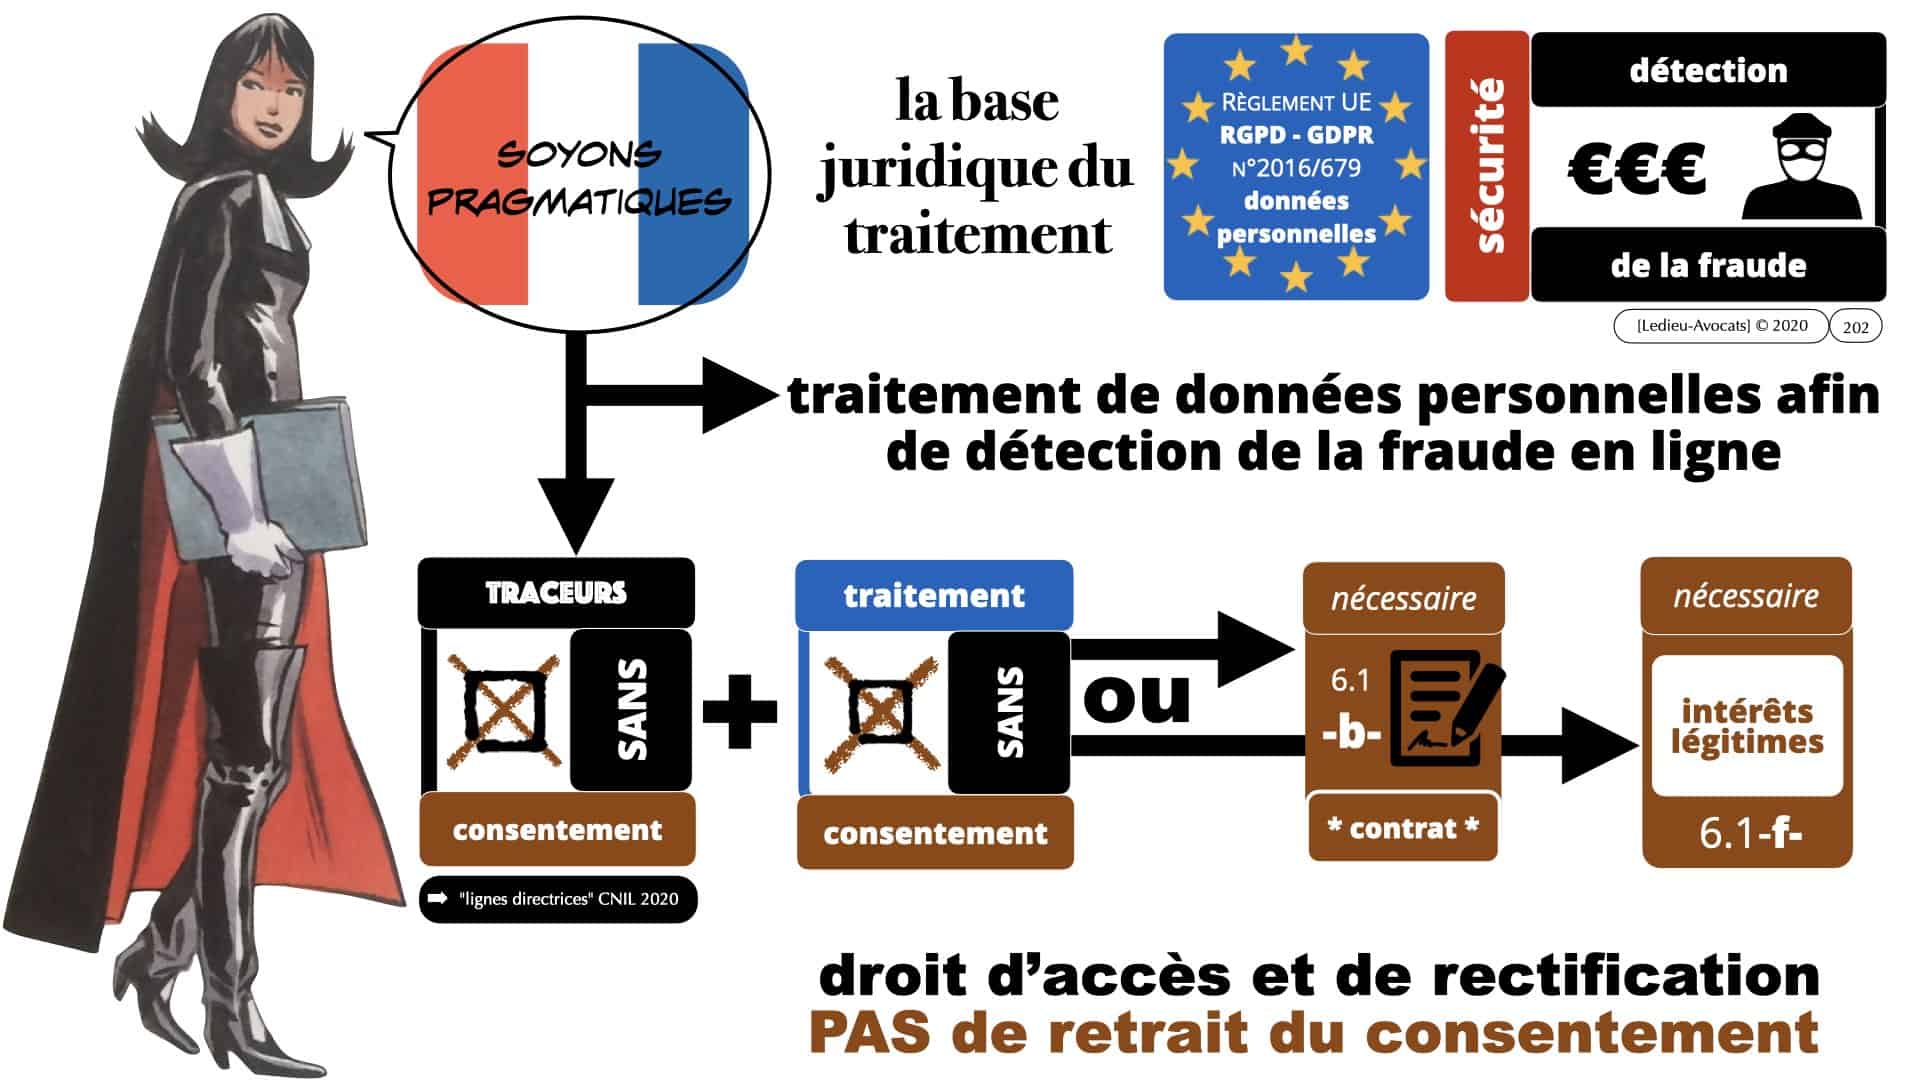 RGPD e-Privacy données personnelles jurisprudence formation Lamy Les Echos 10-02-2021 ©Ledieu-Avocats.202